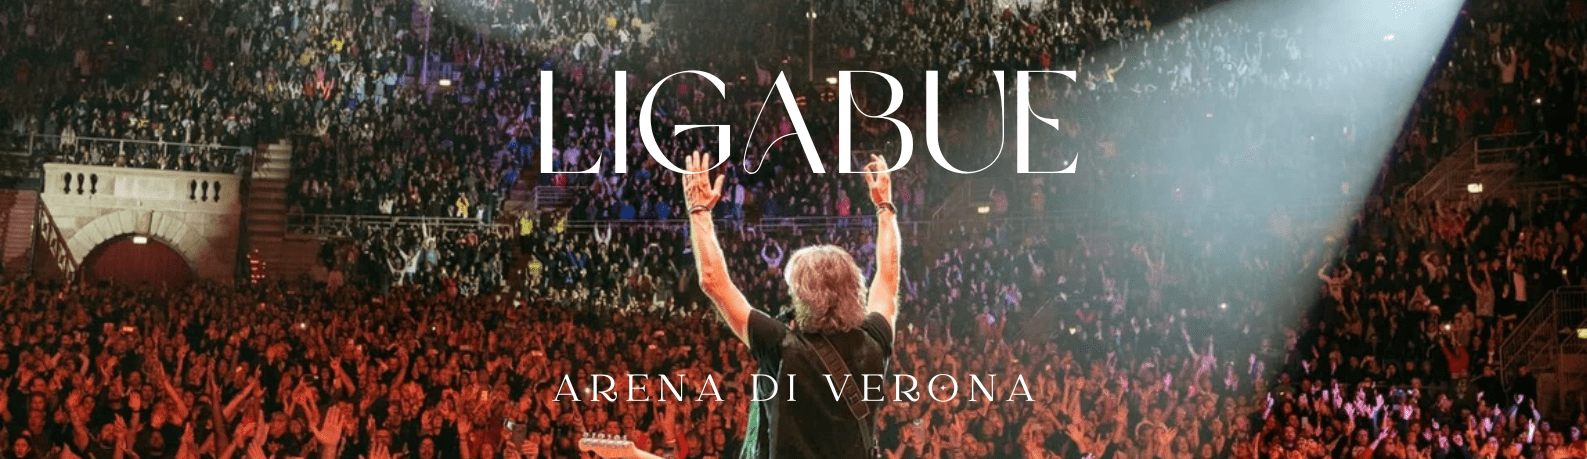 ligabue-arena-di-verona-tickets-concert-concerto-biglietti